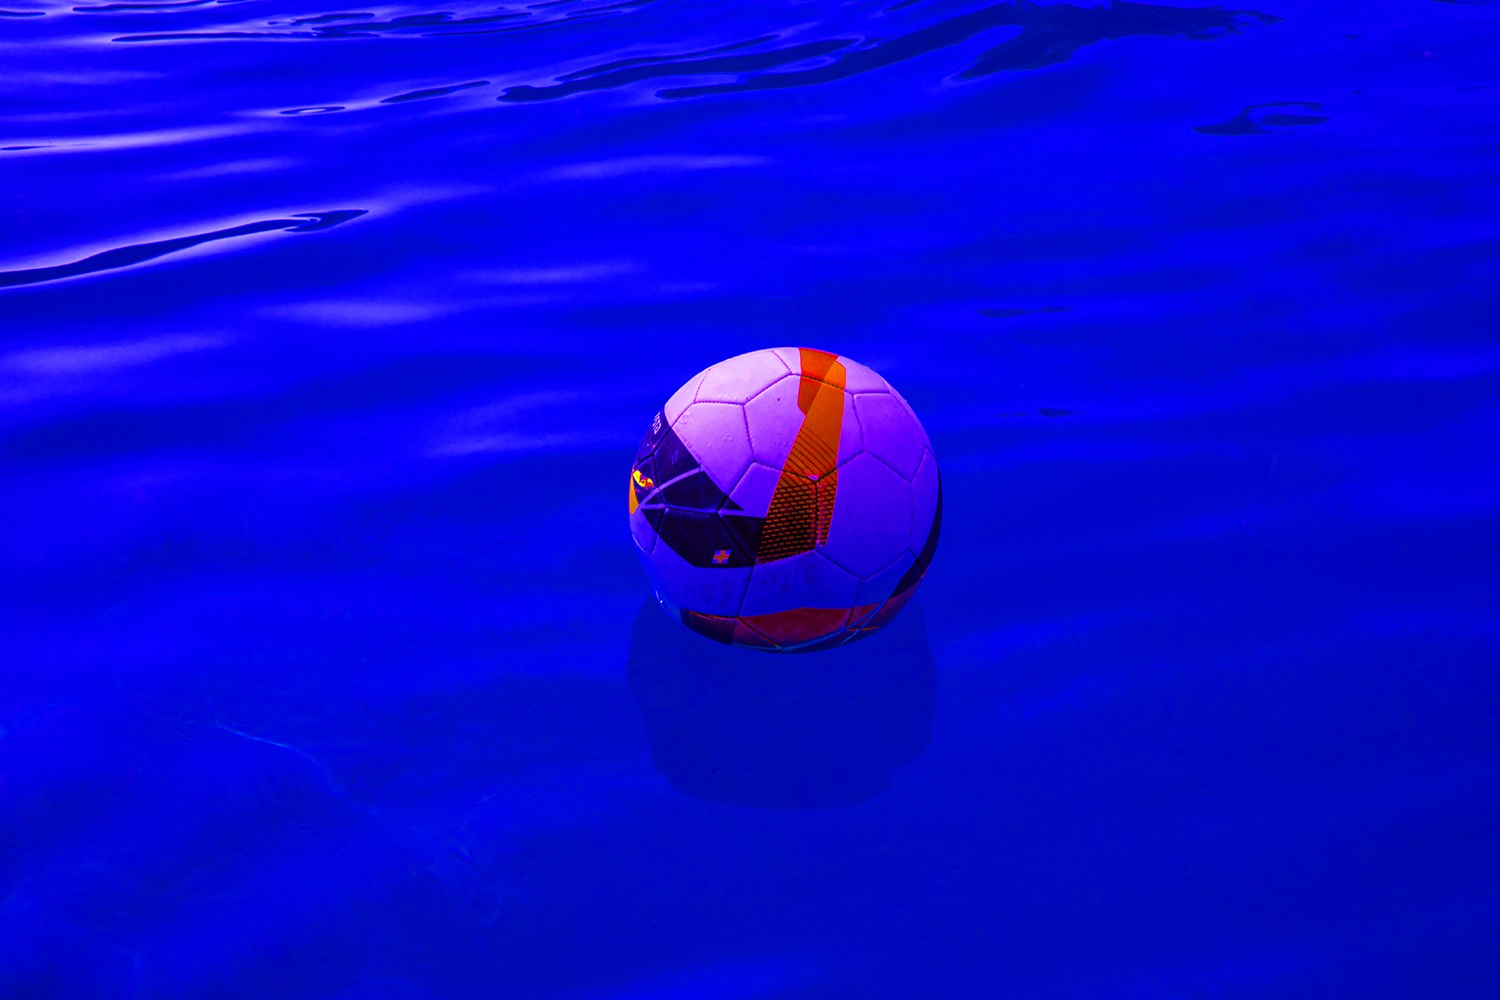 Ballon Sur Bleu